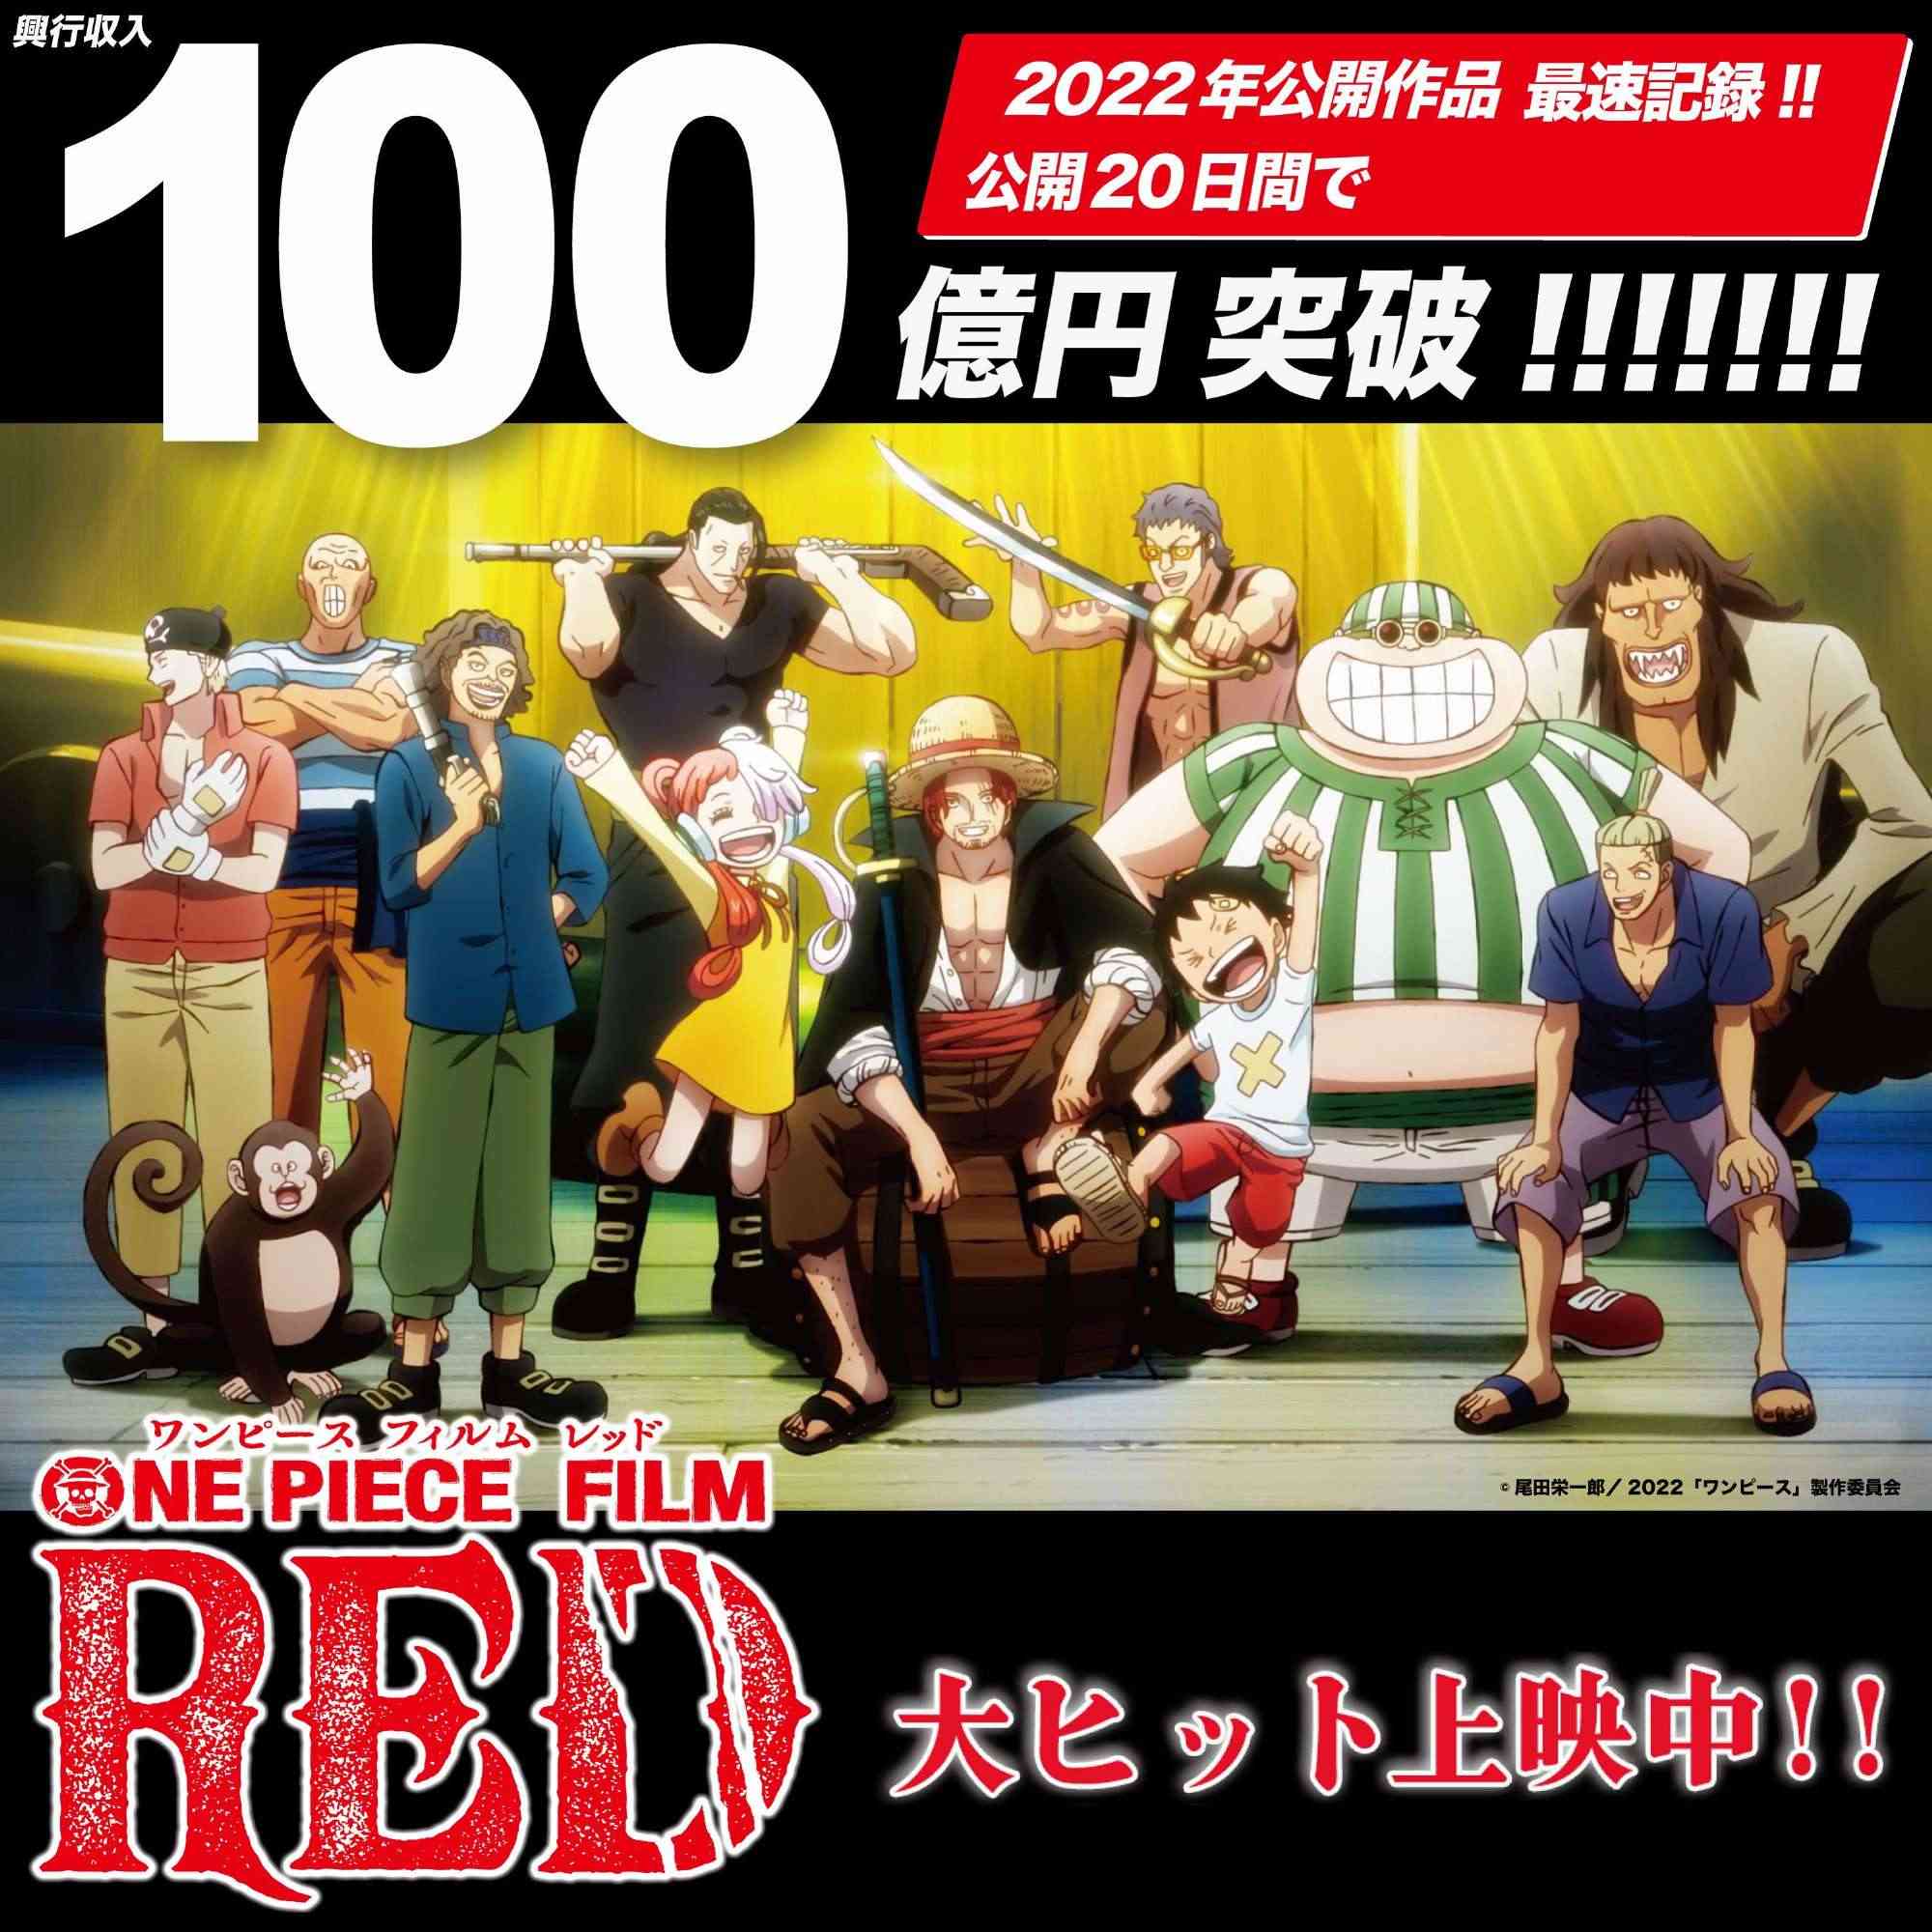 One Piece Film: Red là tác phẩm thành công nhất của Toei Animation